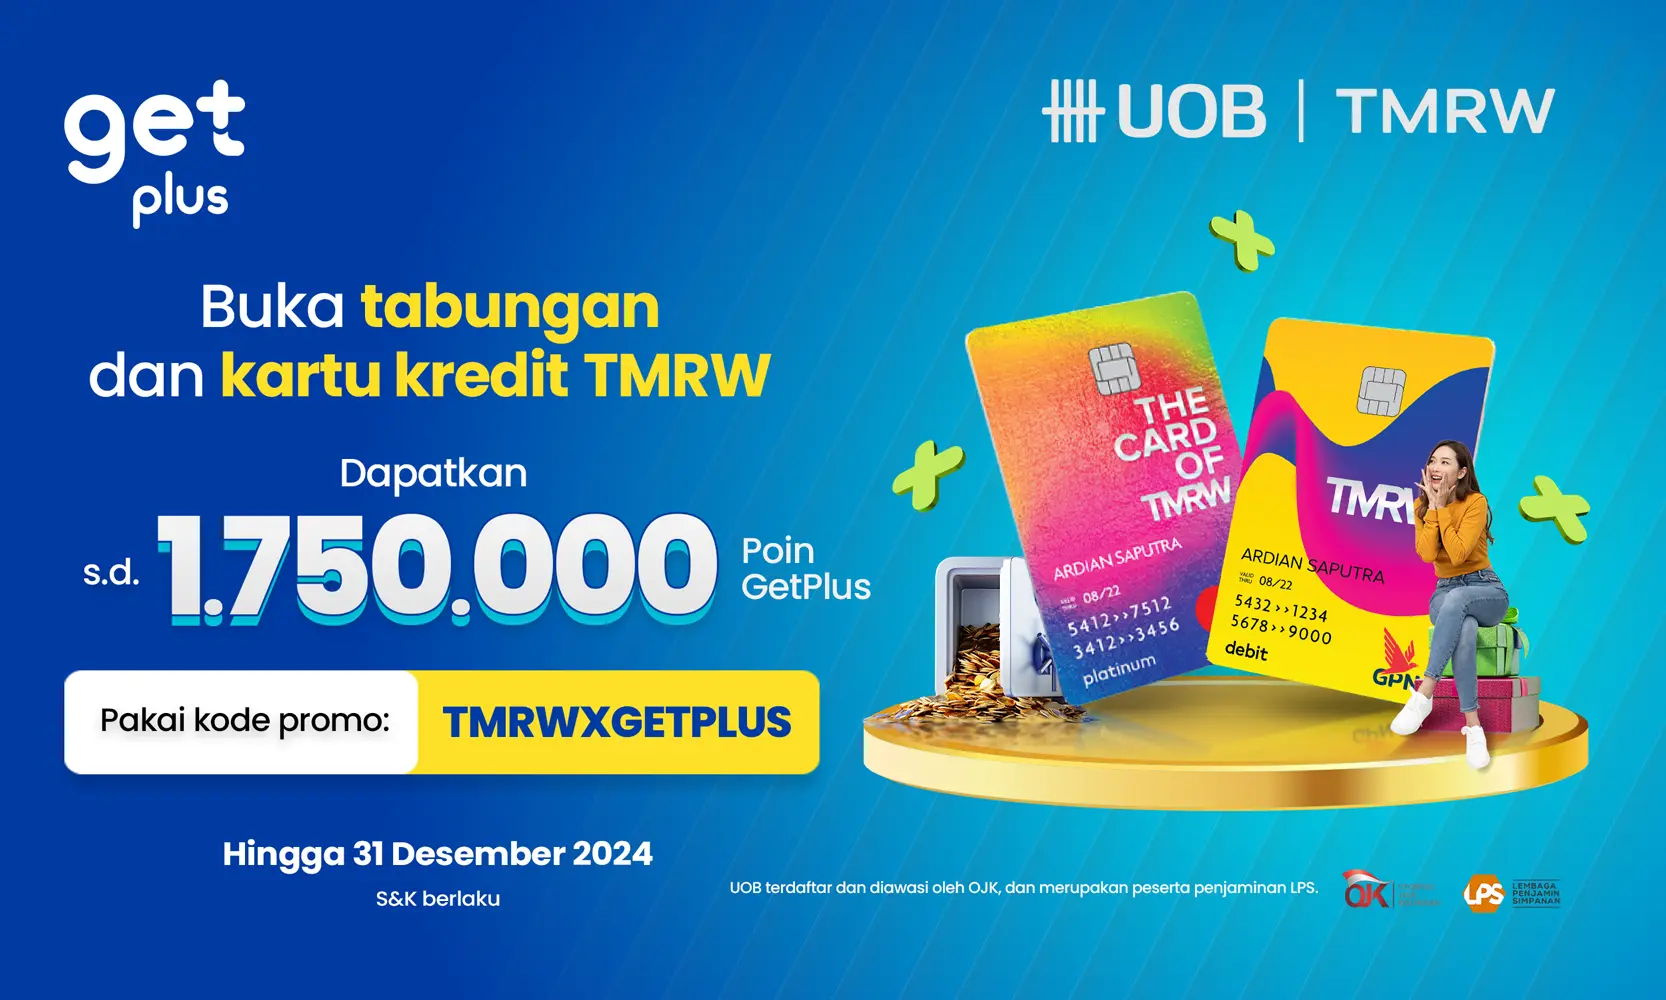 Buka tabungan UOB TMRW & Credit Card TMRW, Bonus sd 1.750.000 Poin